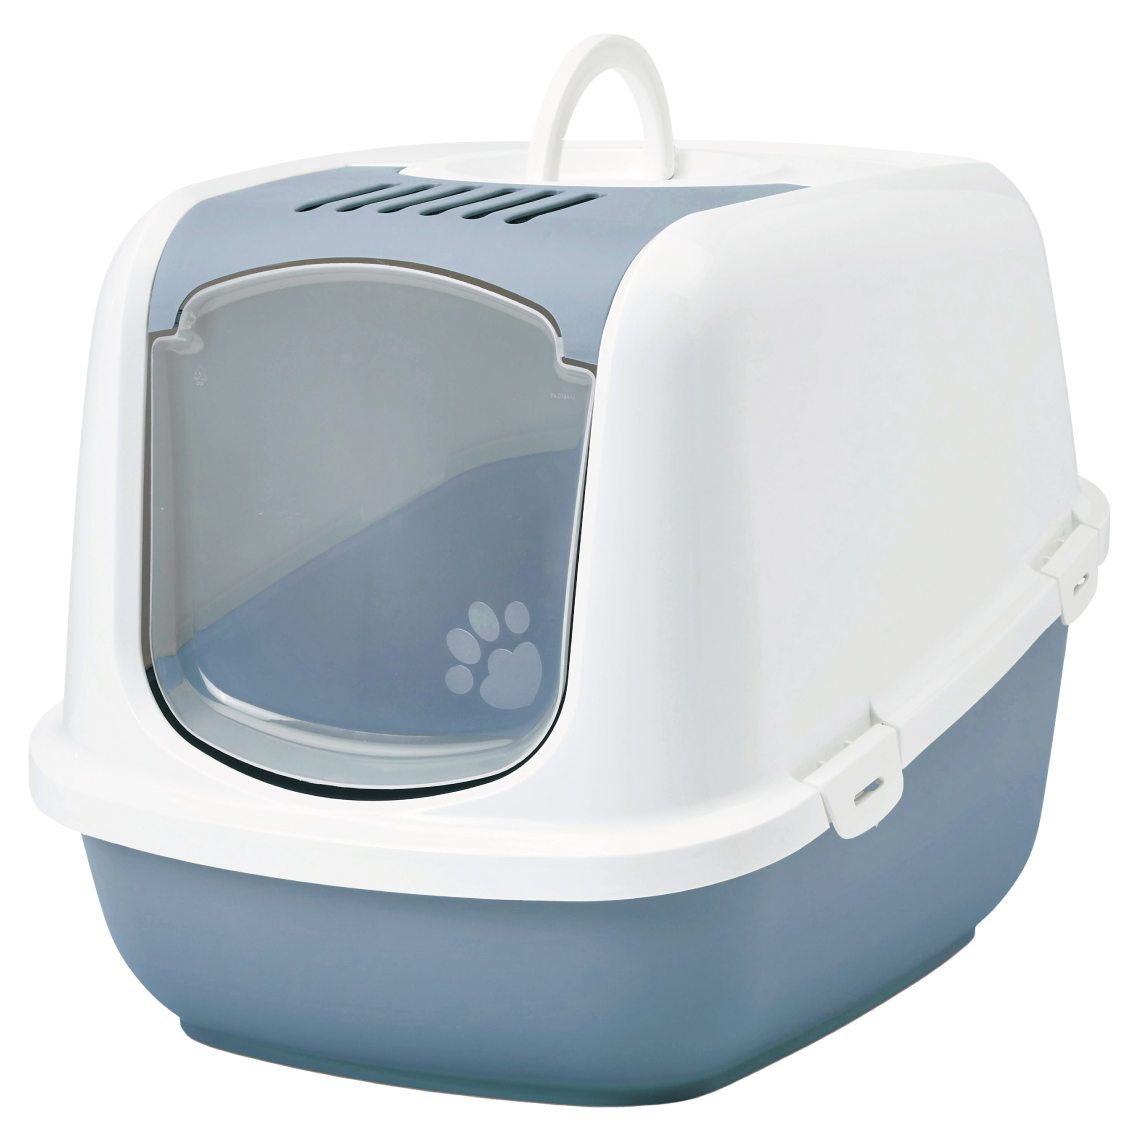 猫トイレ 大型 おすすめ 飛び散らない フルカバー 洗いやすい シンプル おしゃれ 脱臭 ドーム 送料無料 ネコトイレ SAVIC(セイヴィック) ネスタージャンボ